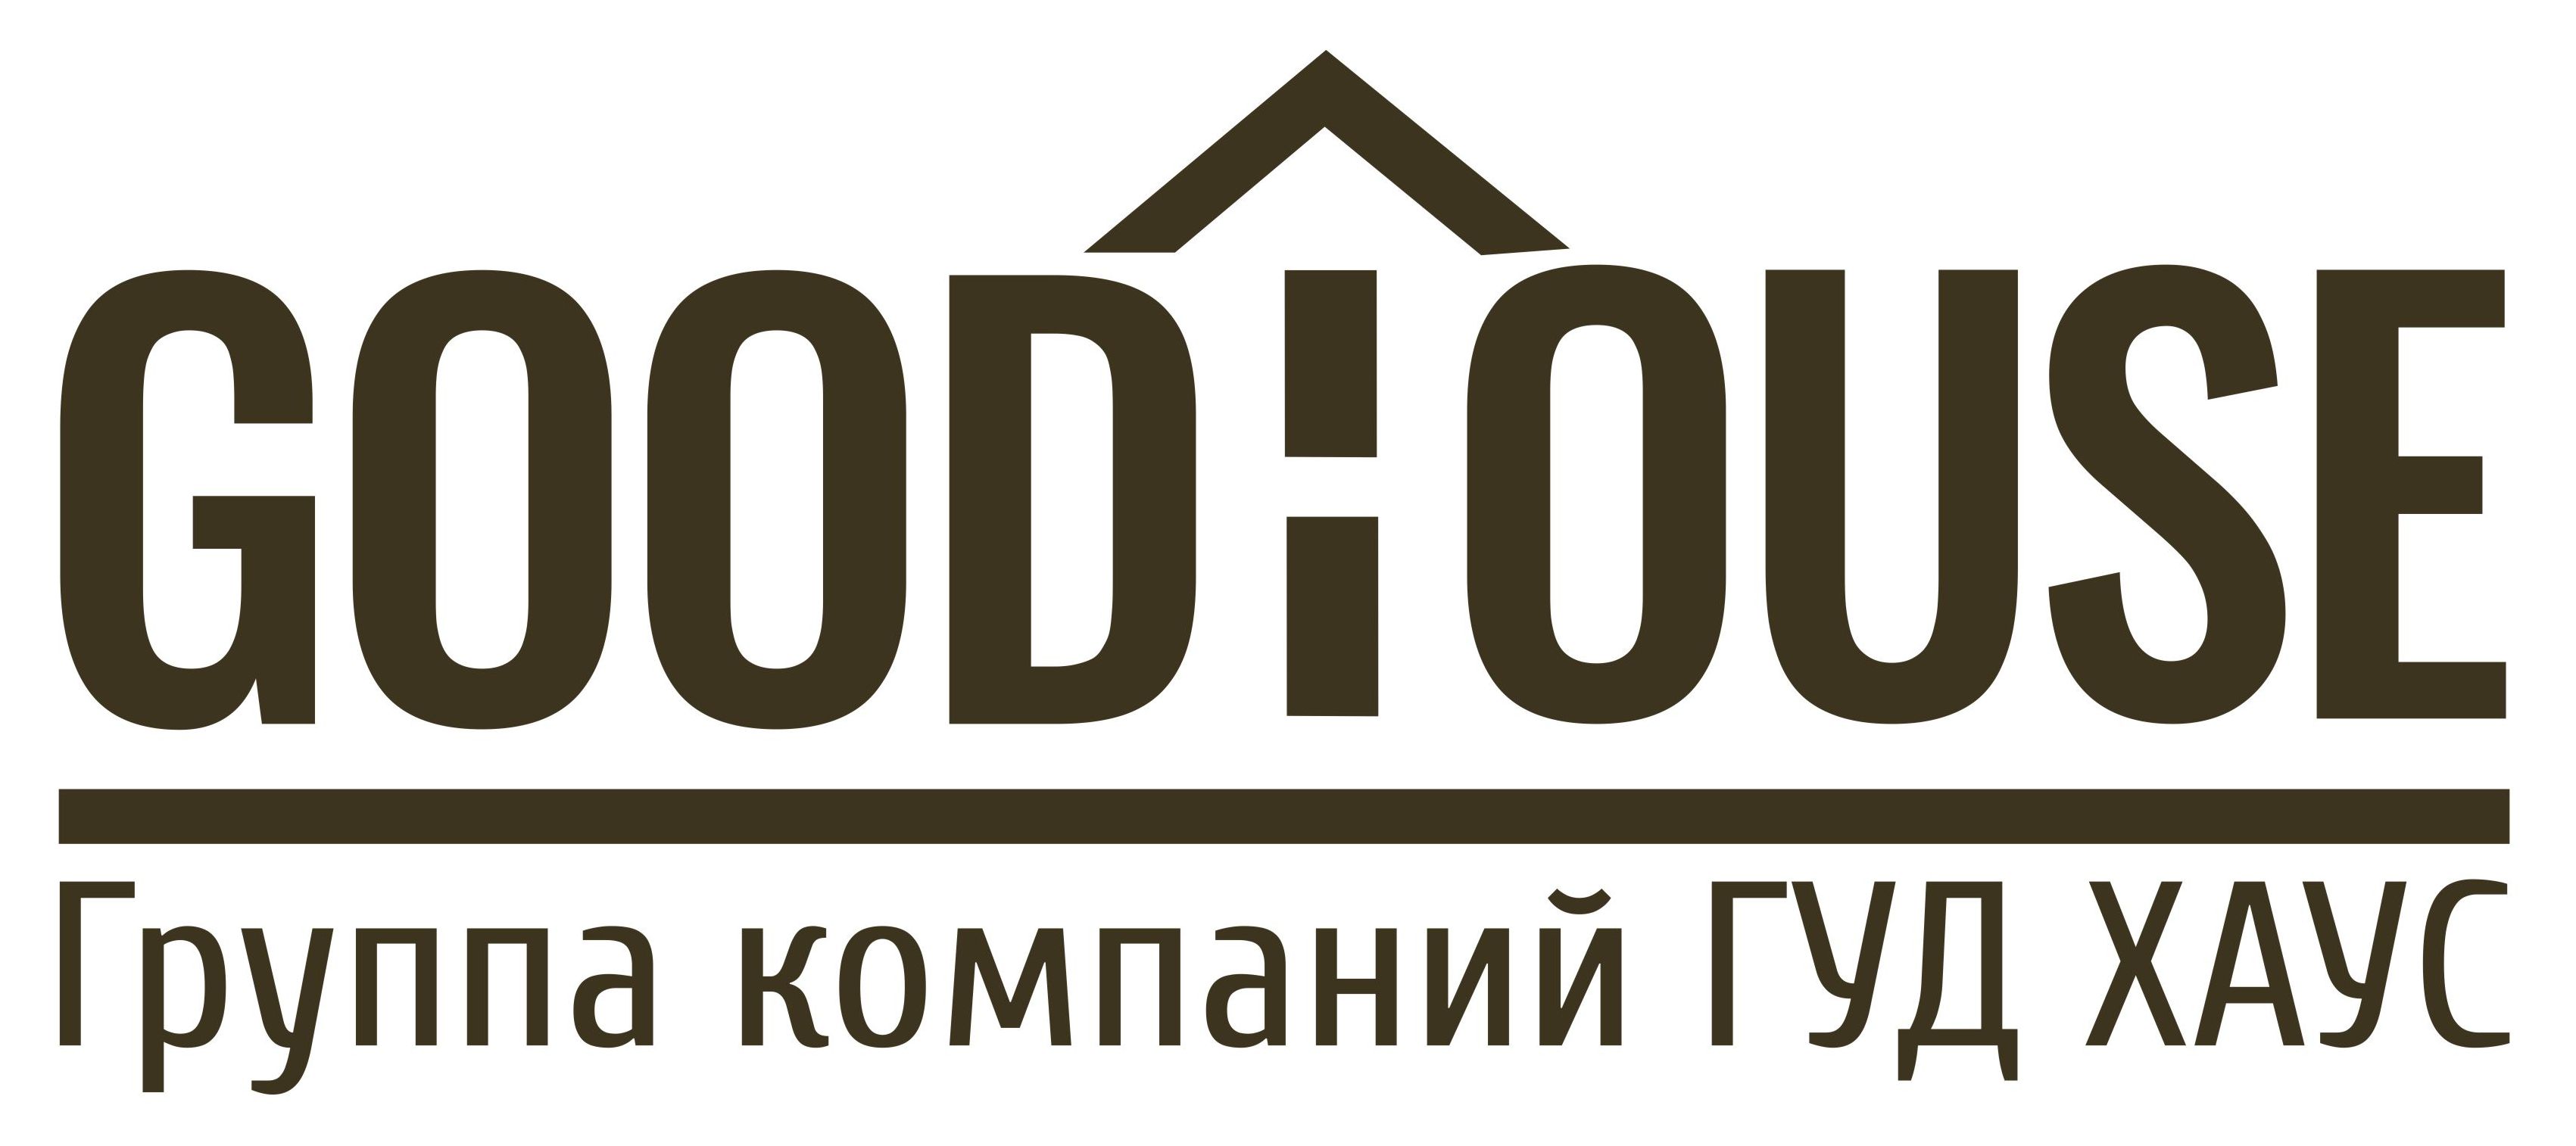 Группа компаний «ГУД ХАУС», логотип